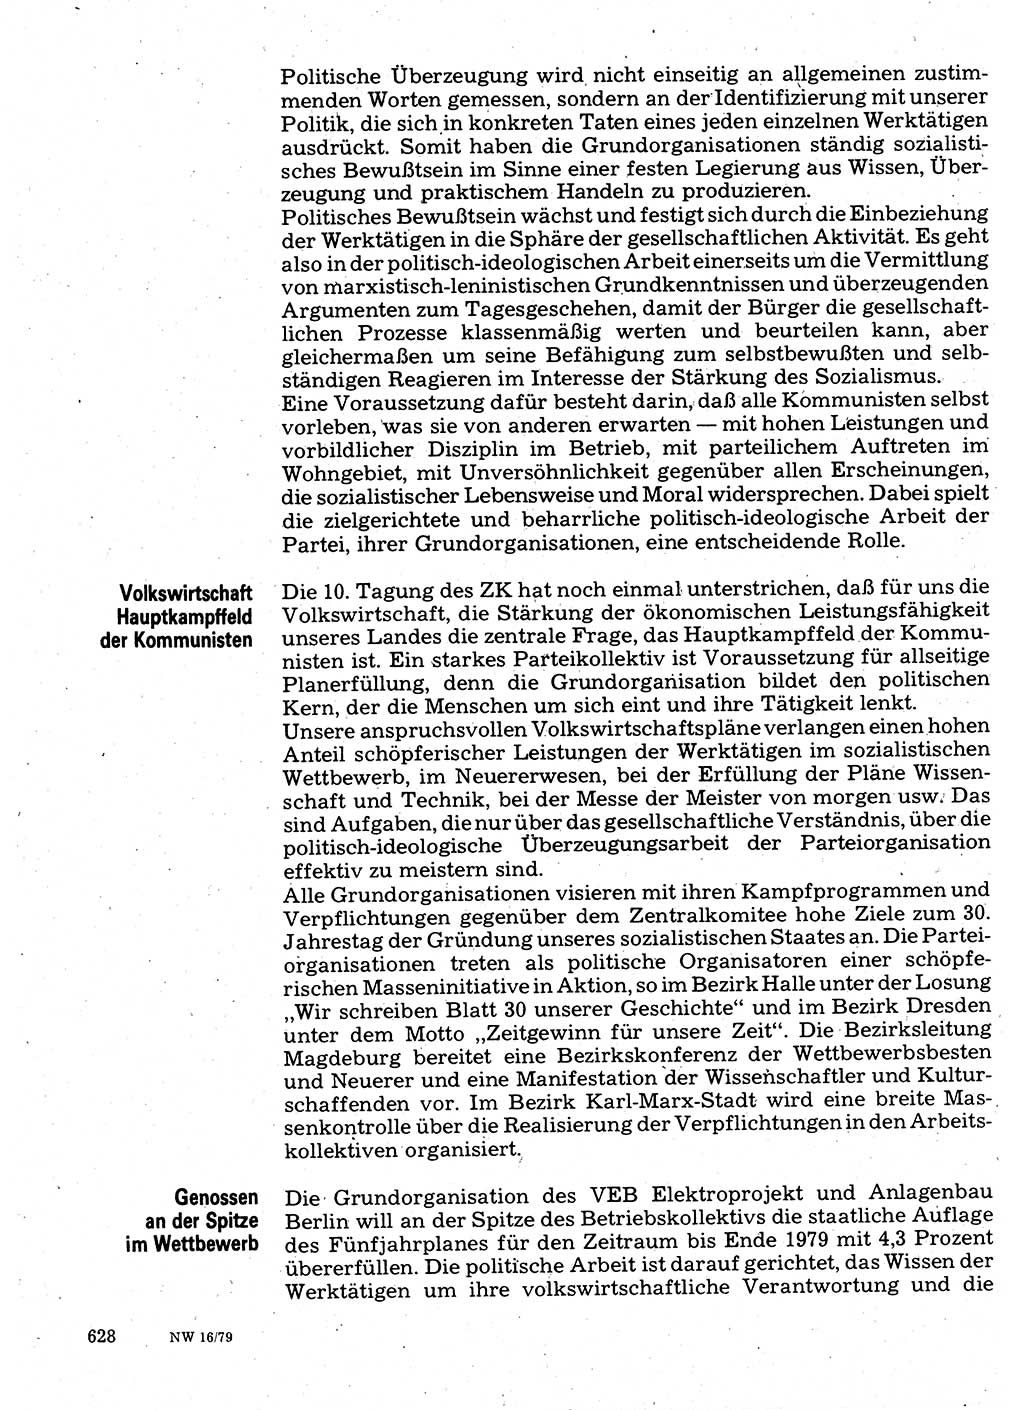 Neuer Weg (NW), Organ des Zentralkomitees (ZK) der SED (Sozialistische Einheitspartei Deutschlands) für Fragen des Parteilebens, 34. Jahrgang [Deutsche Demokratische Republik (DDR)] 1979, Seite 628 (NW ZK SED DDR 1979, S. 628)